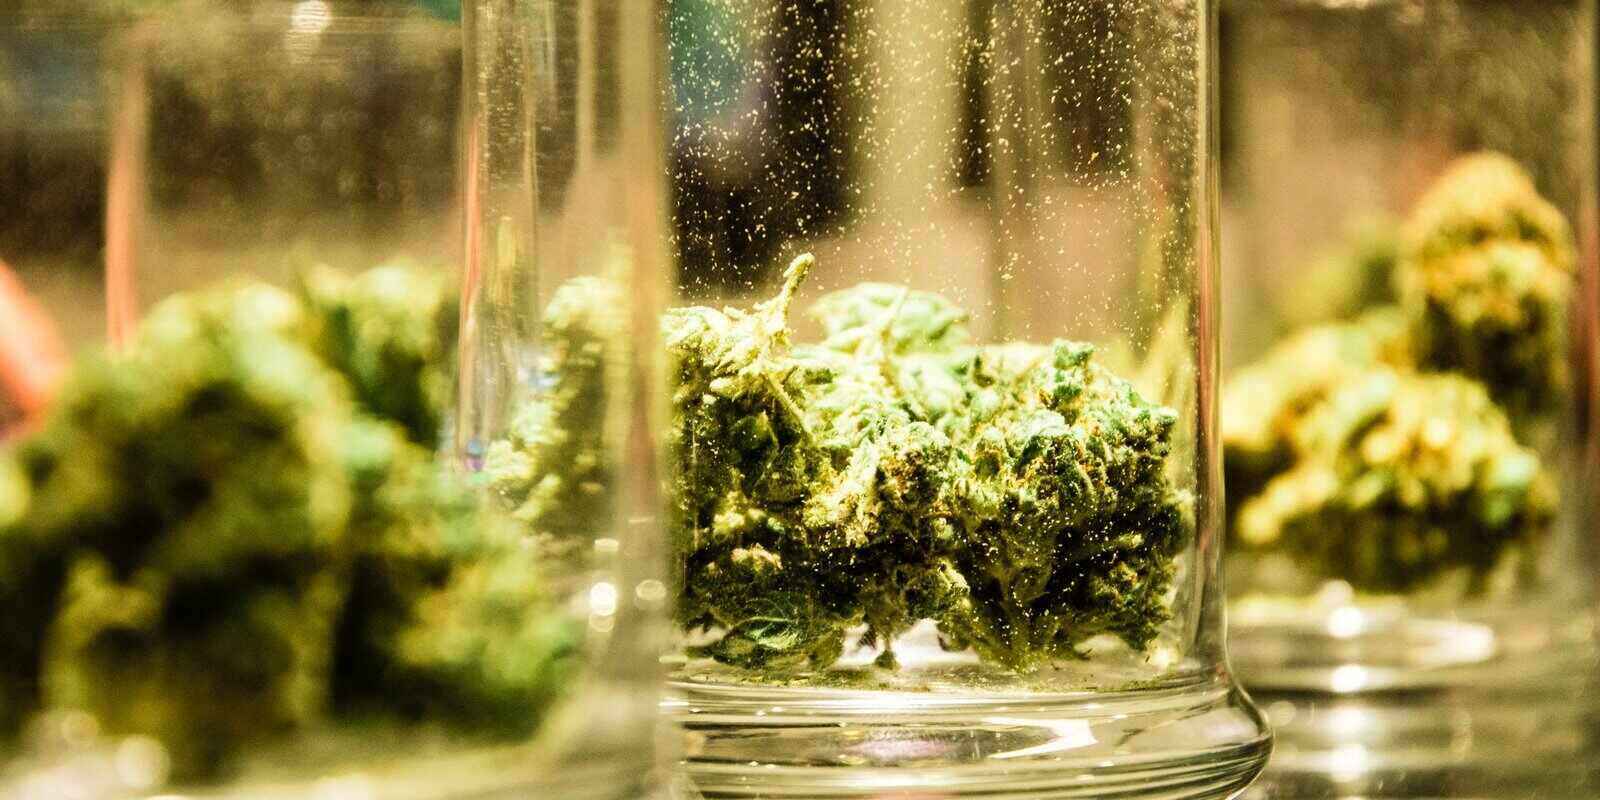 marijuana buds